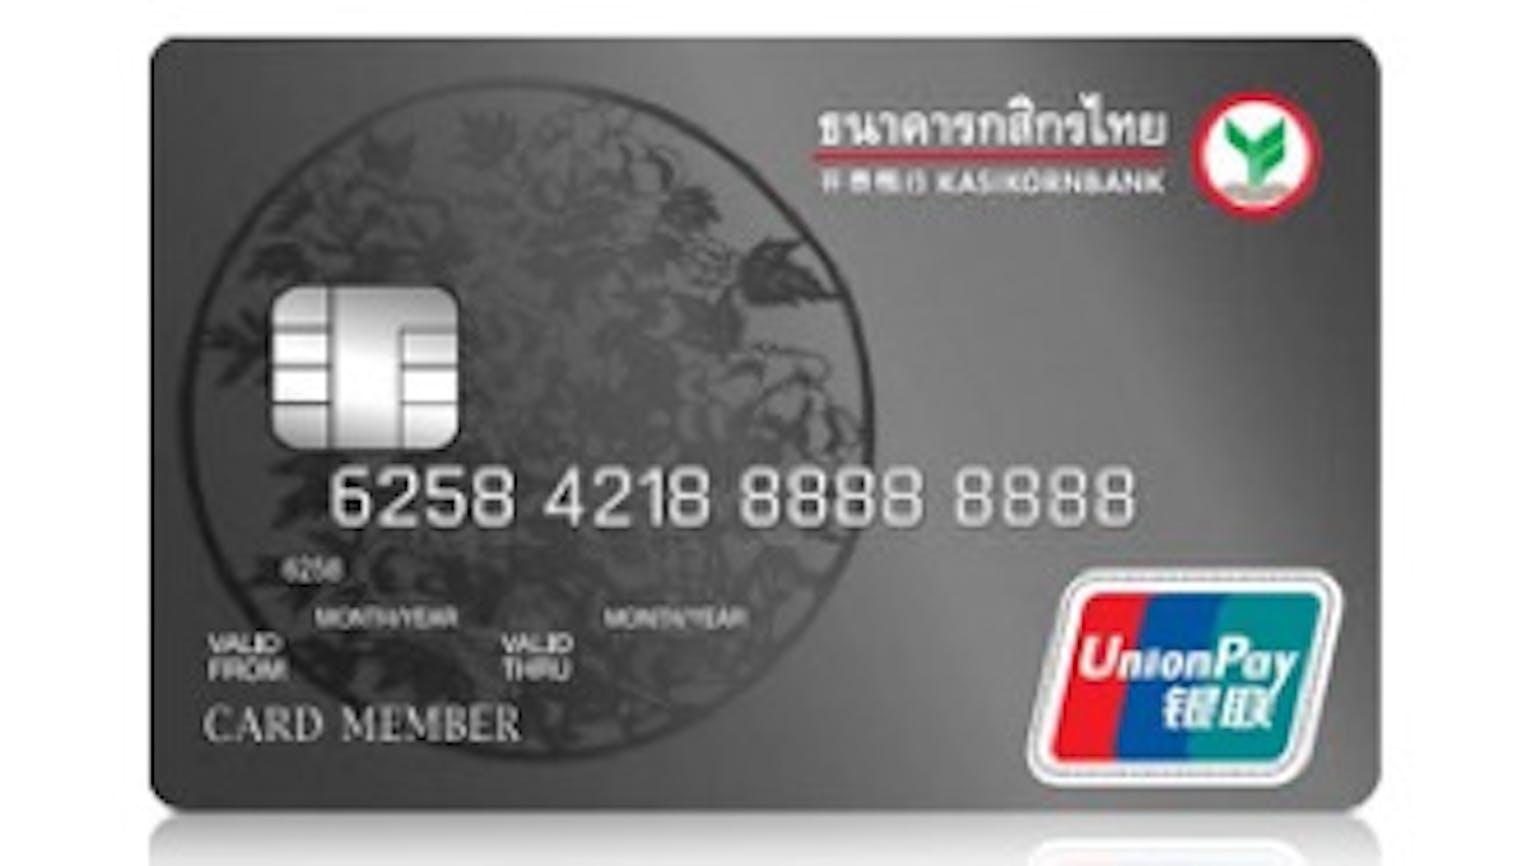 บัตรเครดิต กสิกรไทย ยูเนี่ยนเพย์ แพลทินั่ม